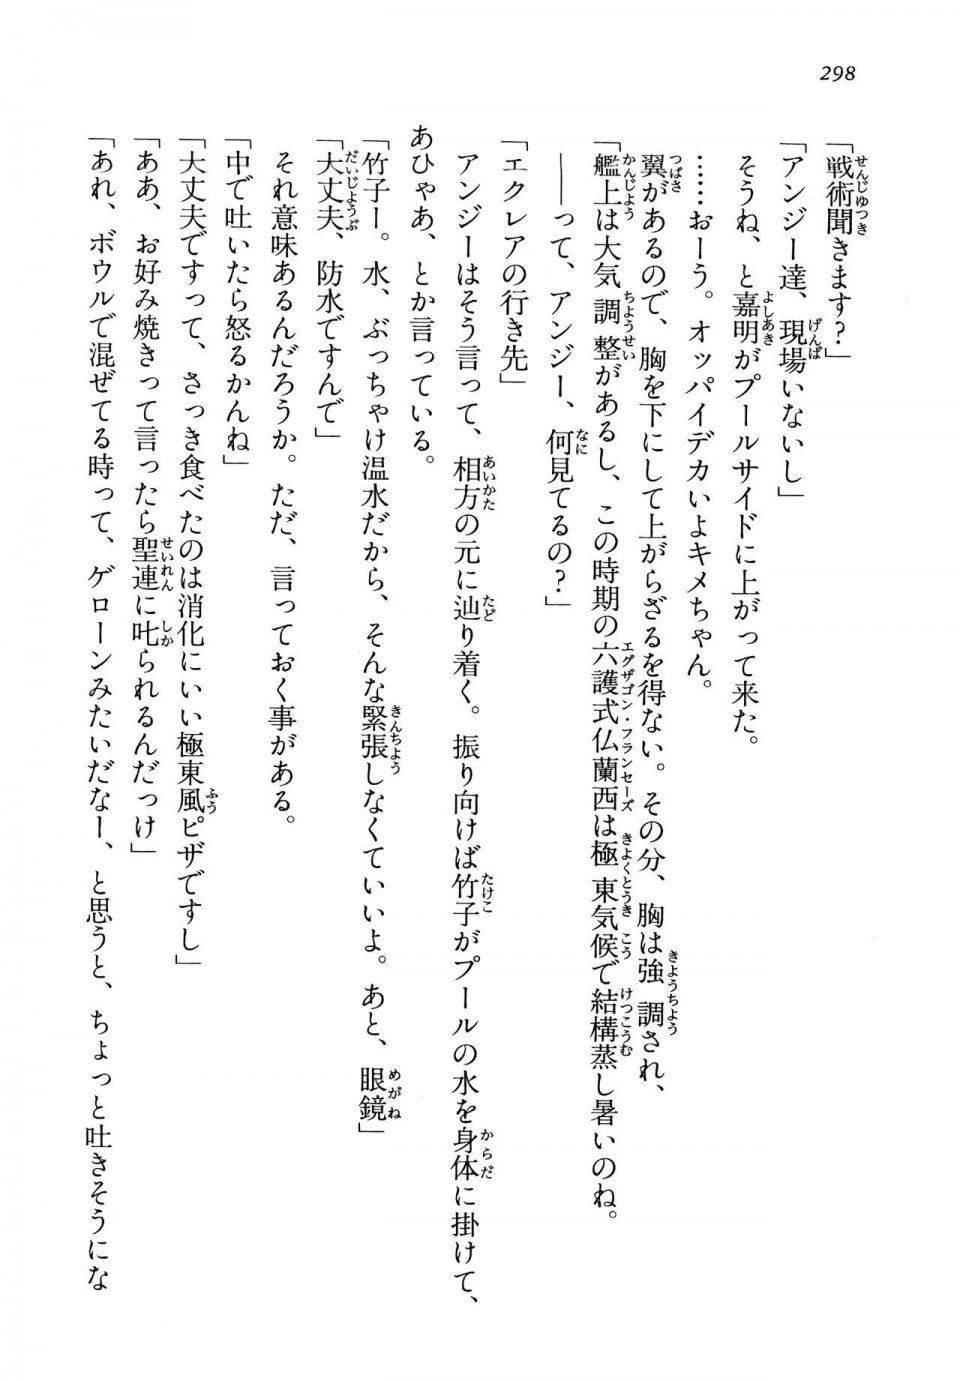 Kyoukai Senjou no Horizon LN Vol 13(6A) - Photo #298